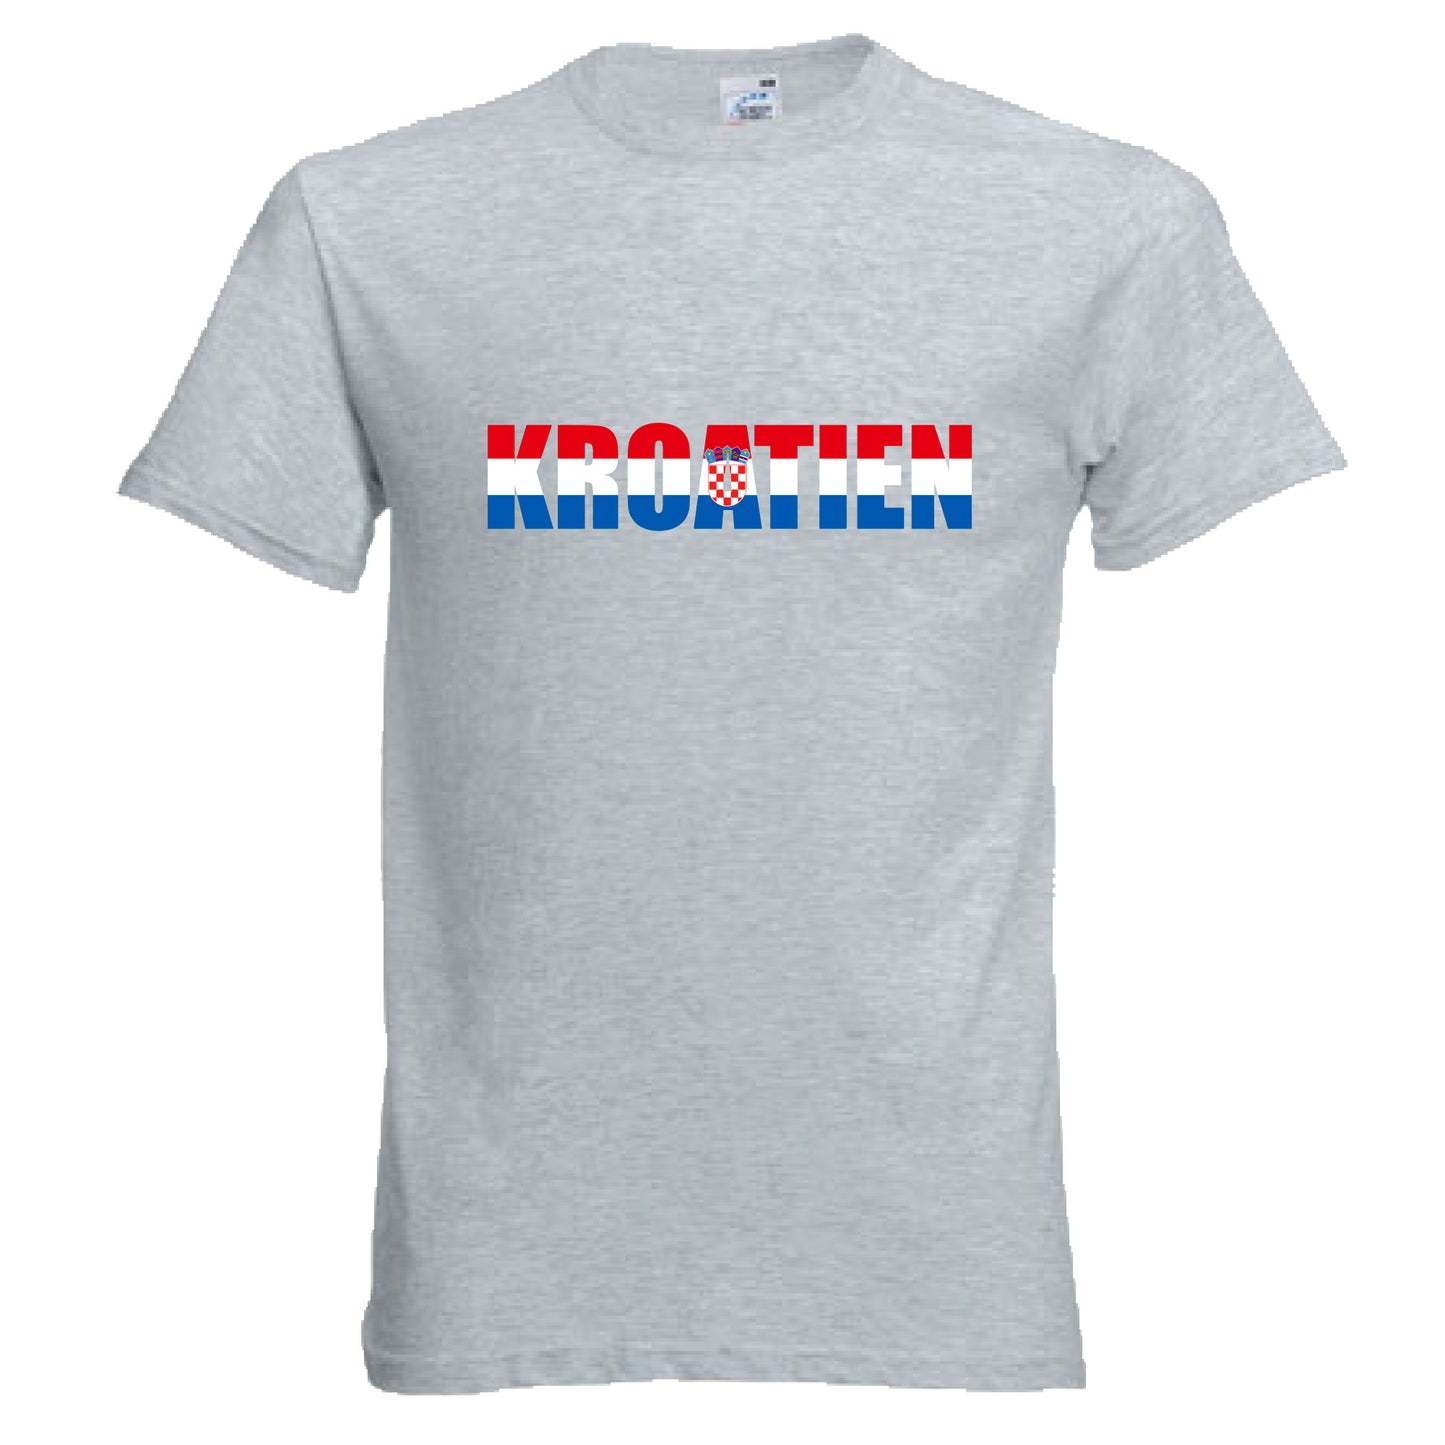 INDIGOS UG - T-Shirt Herren - Kroatien - Schriftzug - Fussball